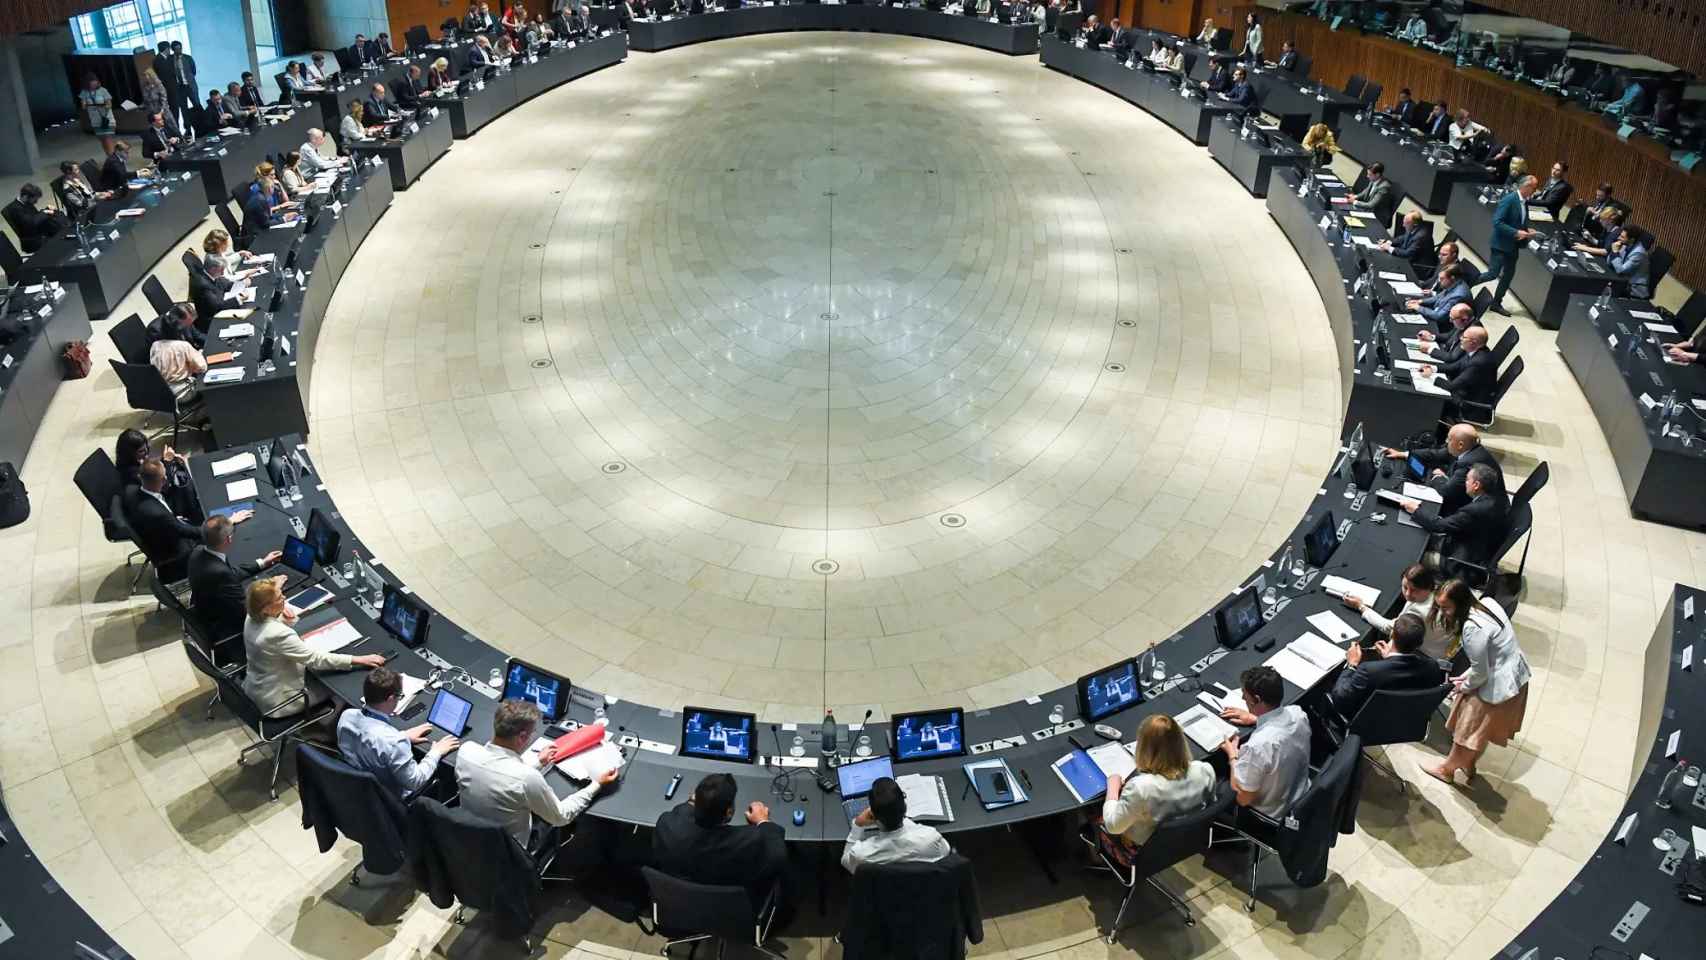 Imagen cenital de una reunión del Consejo de ministros de Transporte de la UE.